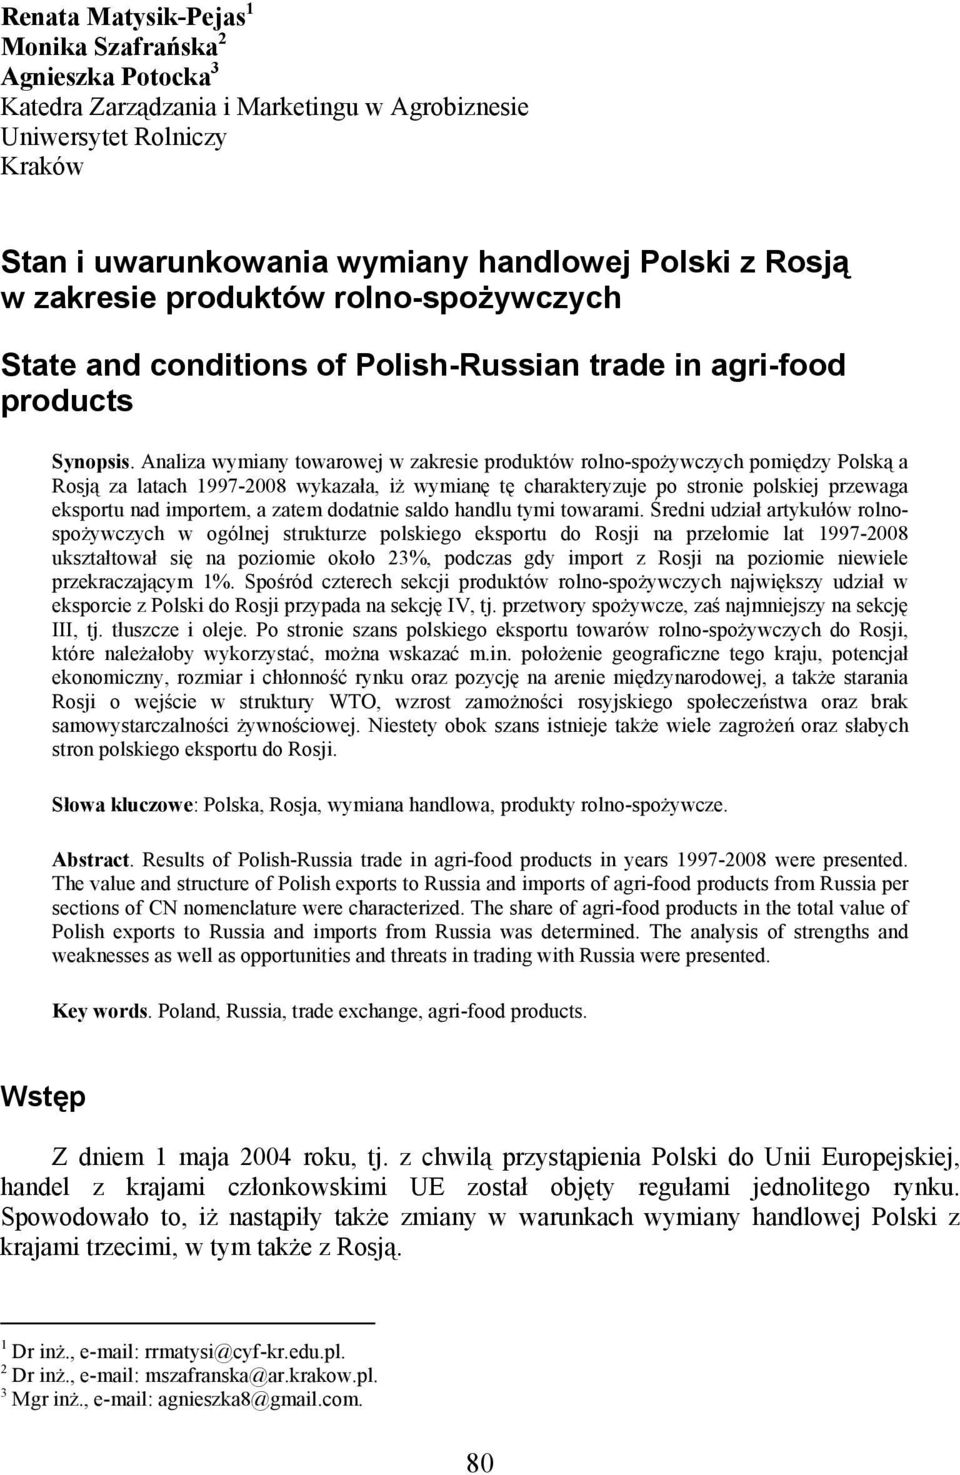 Analiza wymiany towarowej w zakresie produktów rolno-spożywczych pomiędzy Polską a Rosją za latach 1997-2008 wykazała, iż wymianę tę charakteryzuje po stronie polskiej przewaga u nad em, a zatem